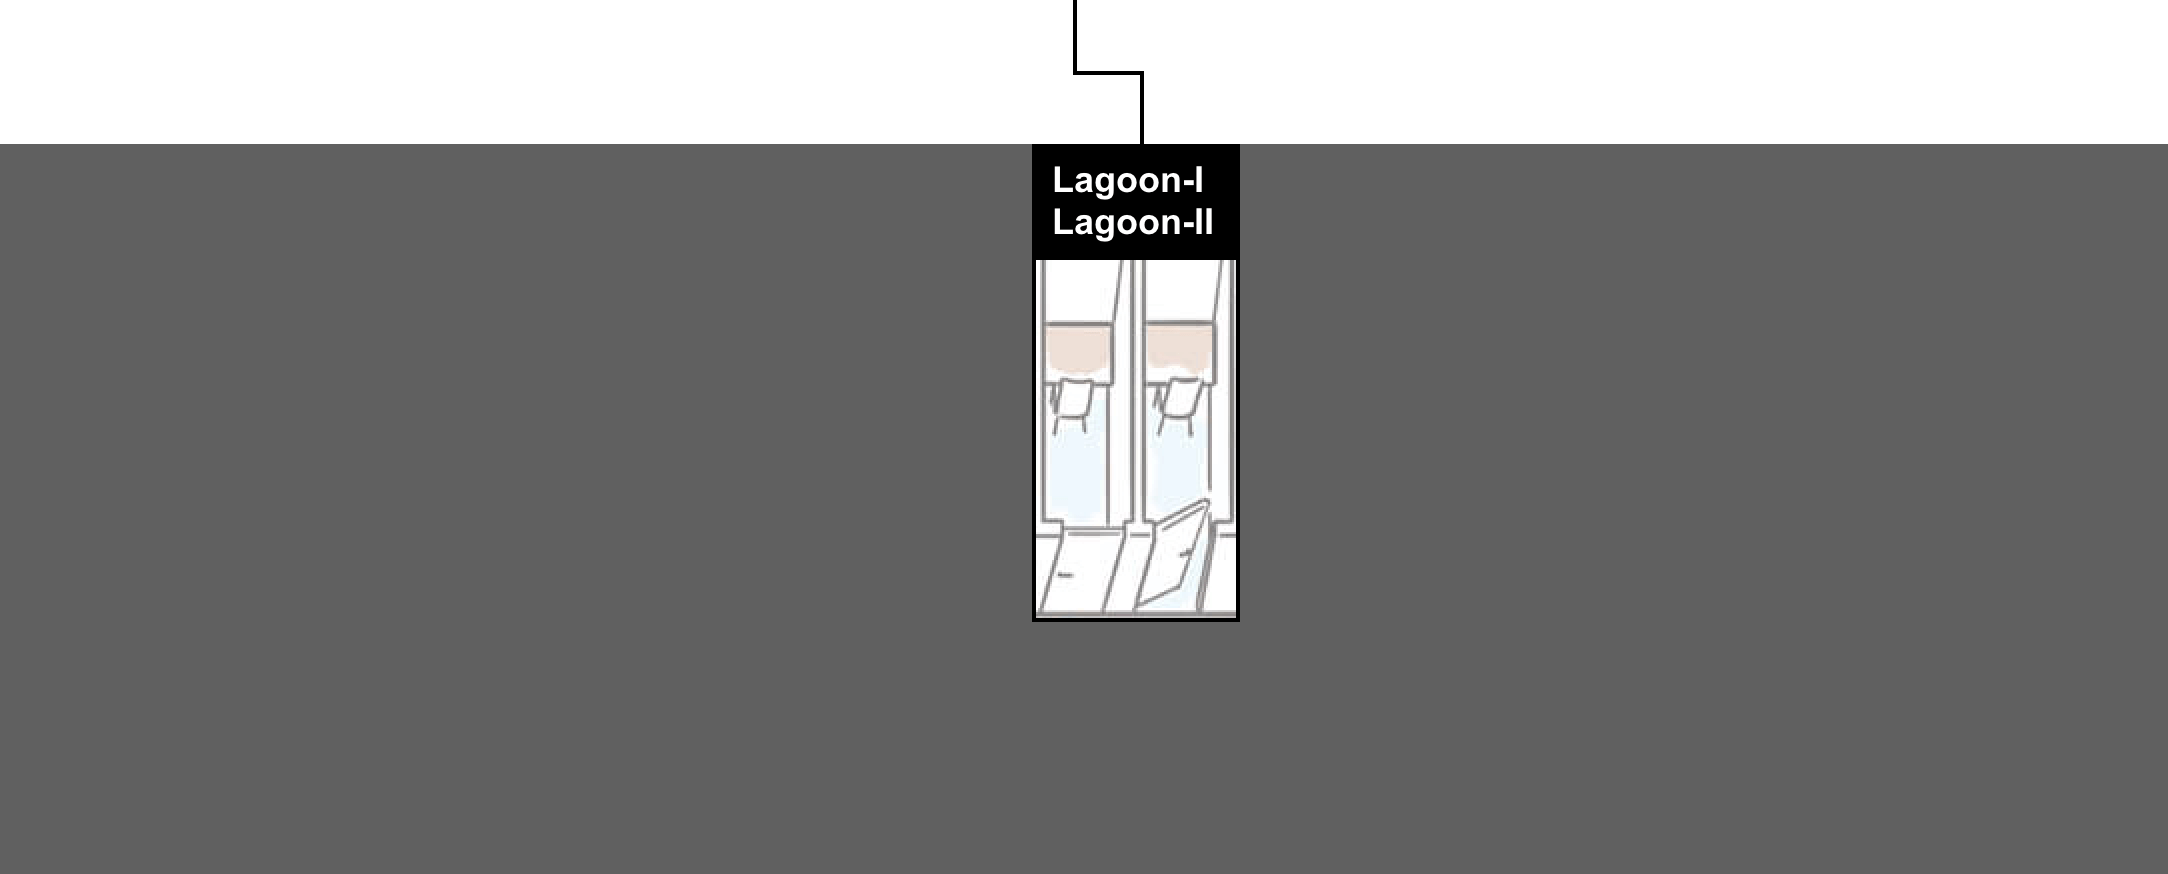 Lagoon-I/Lagoon-II